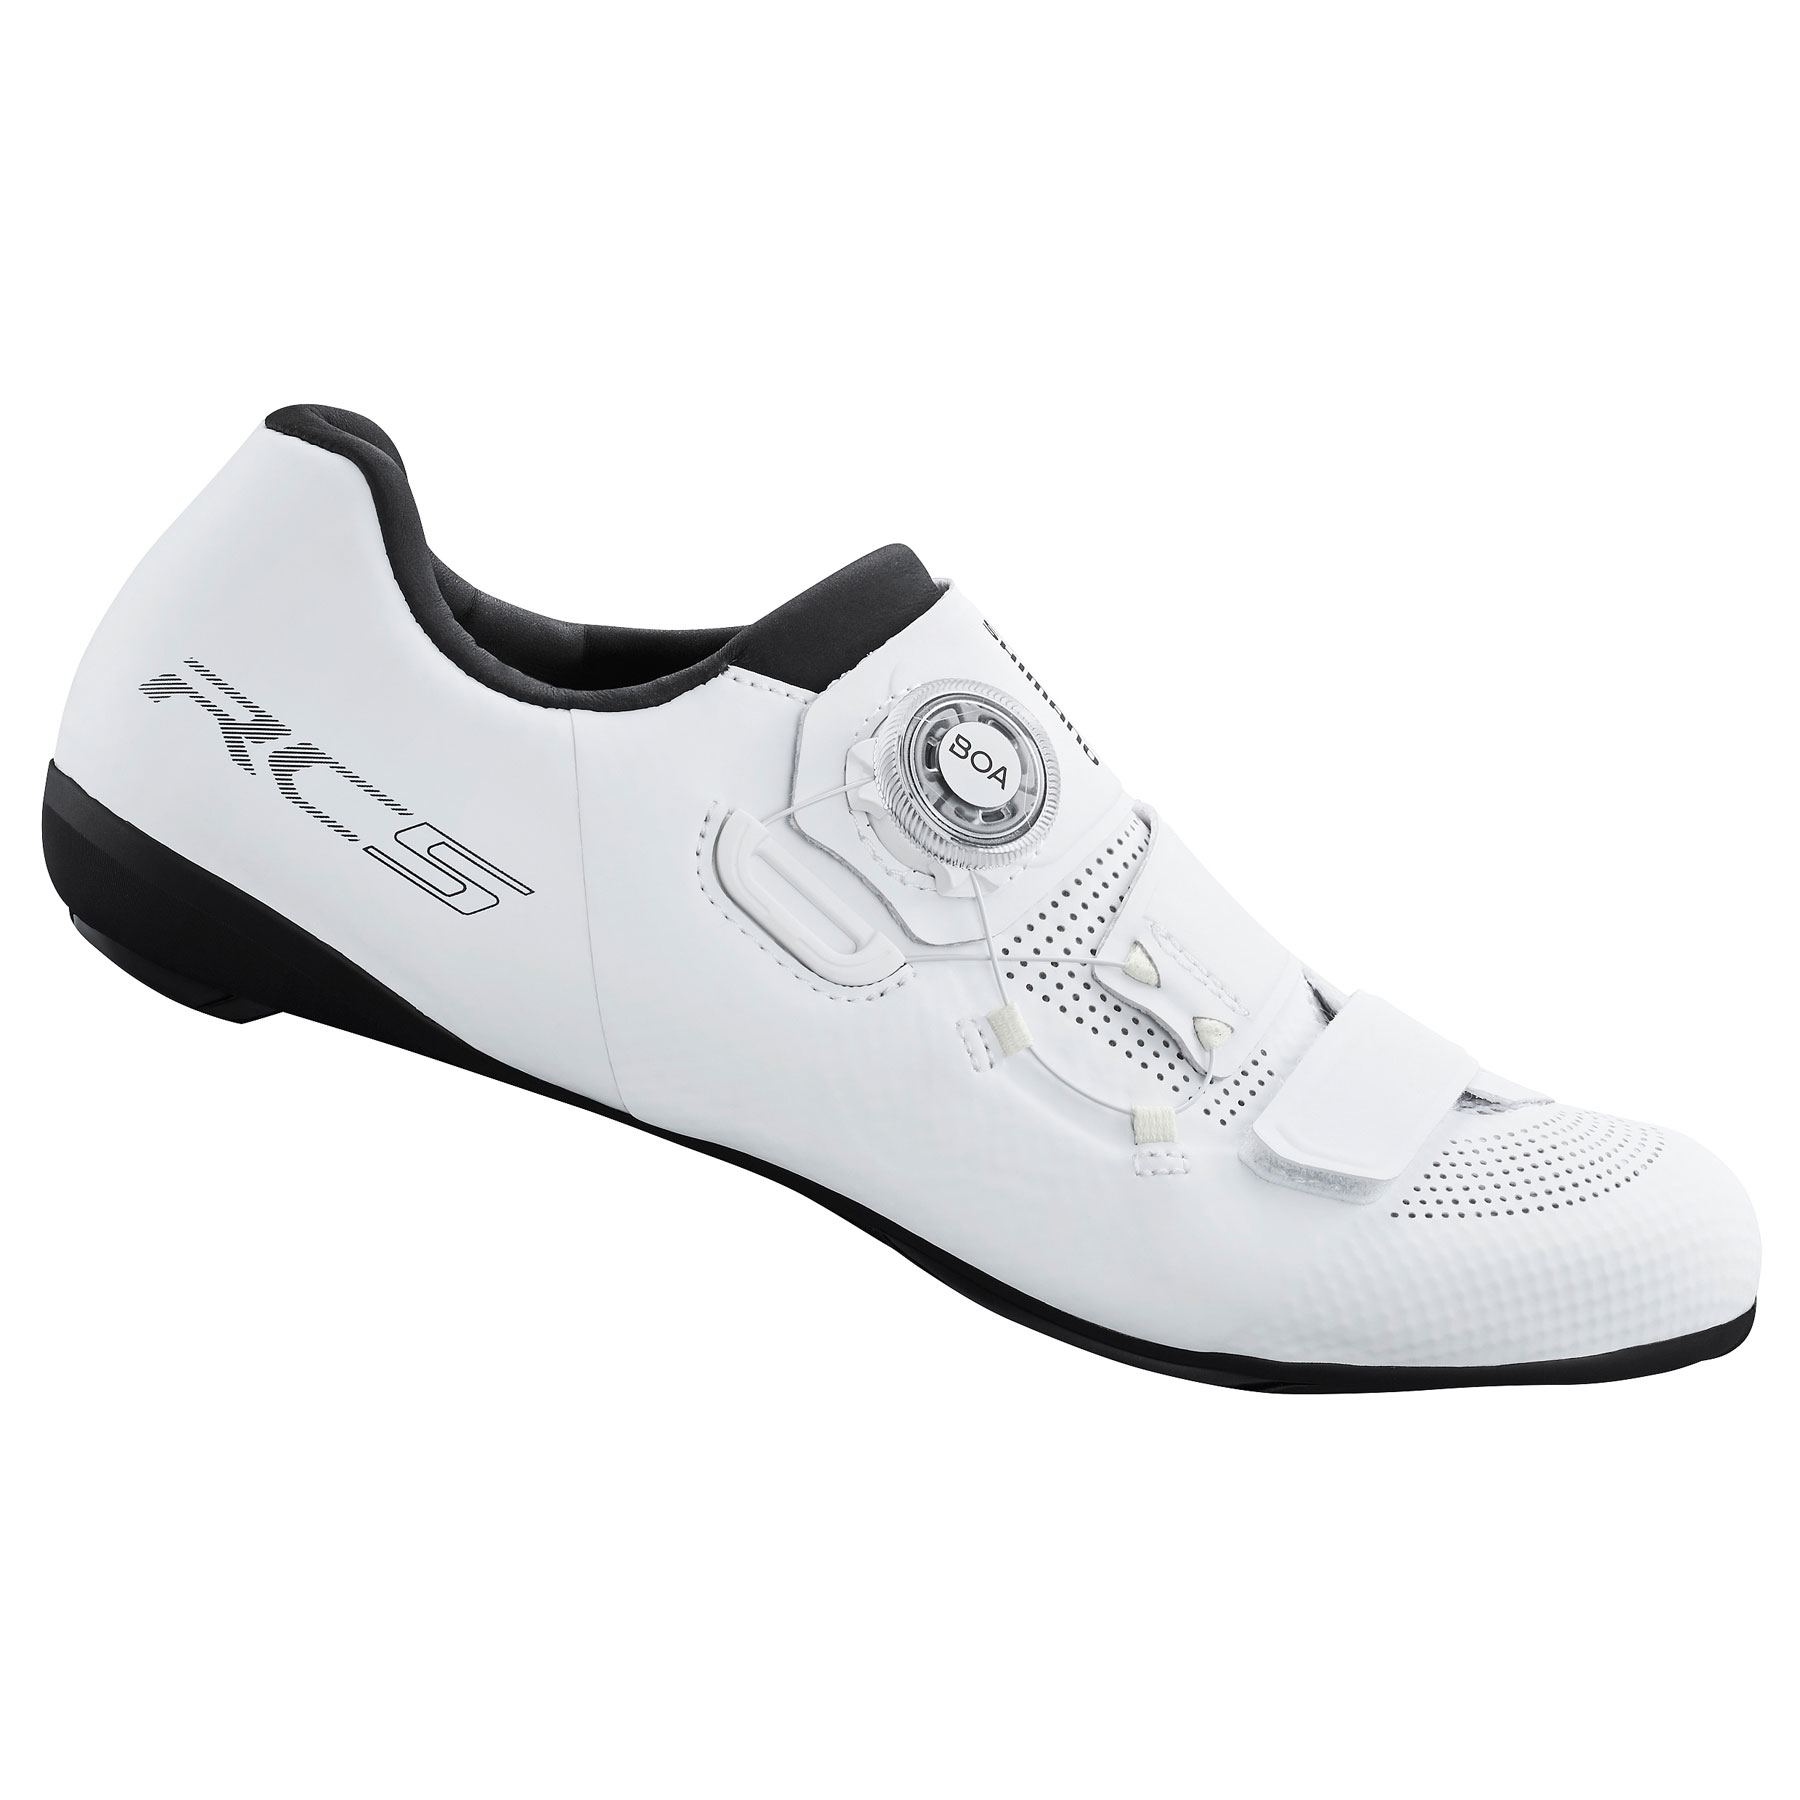 Produktbild von Shimano SH-RC502 Rennradschuhe Damen - White